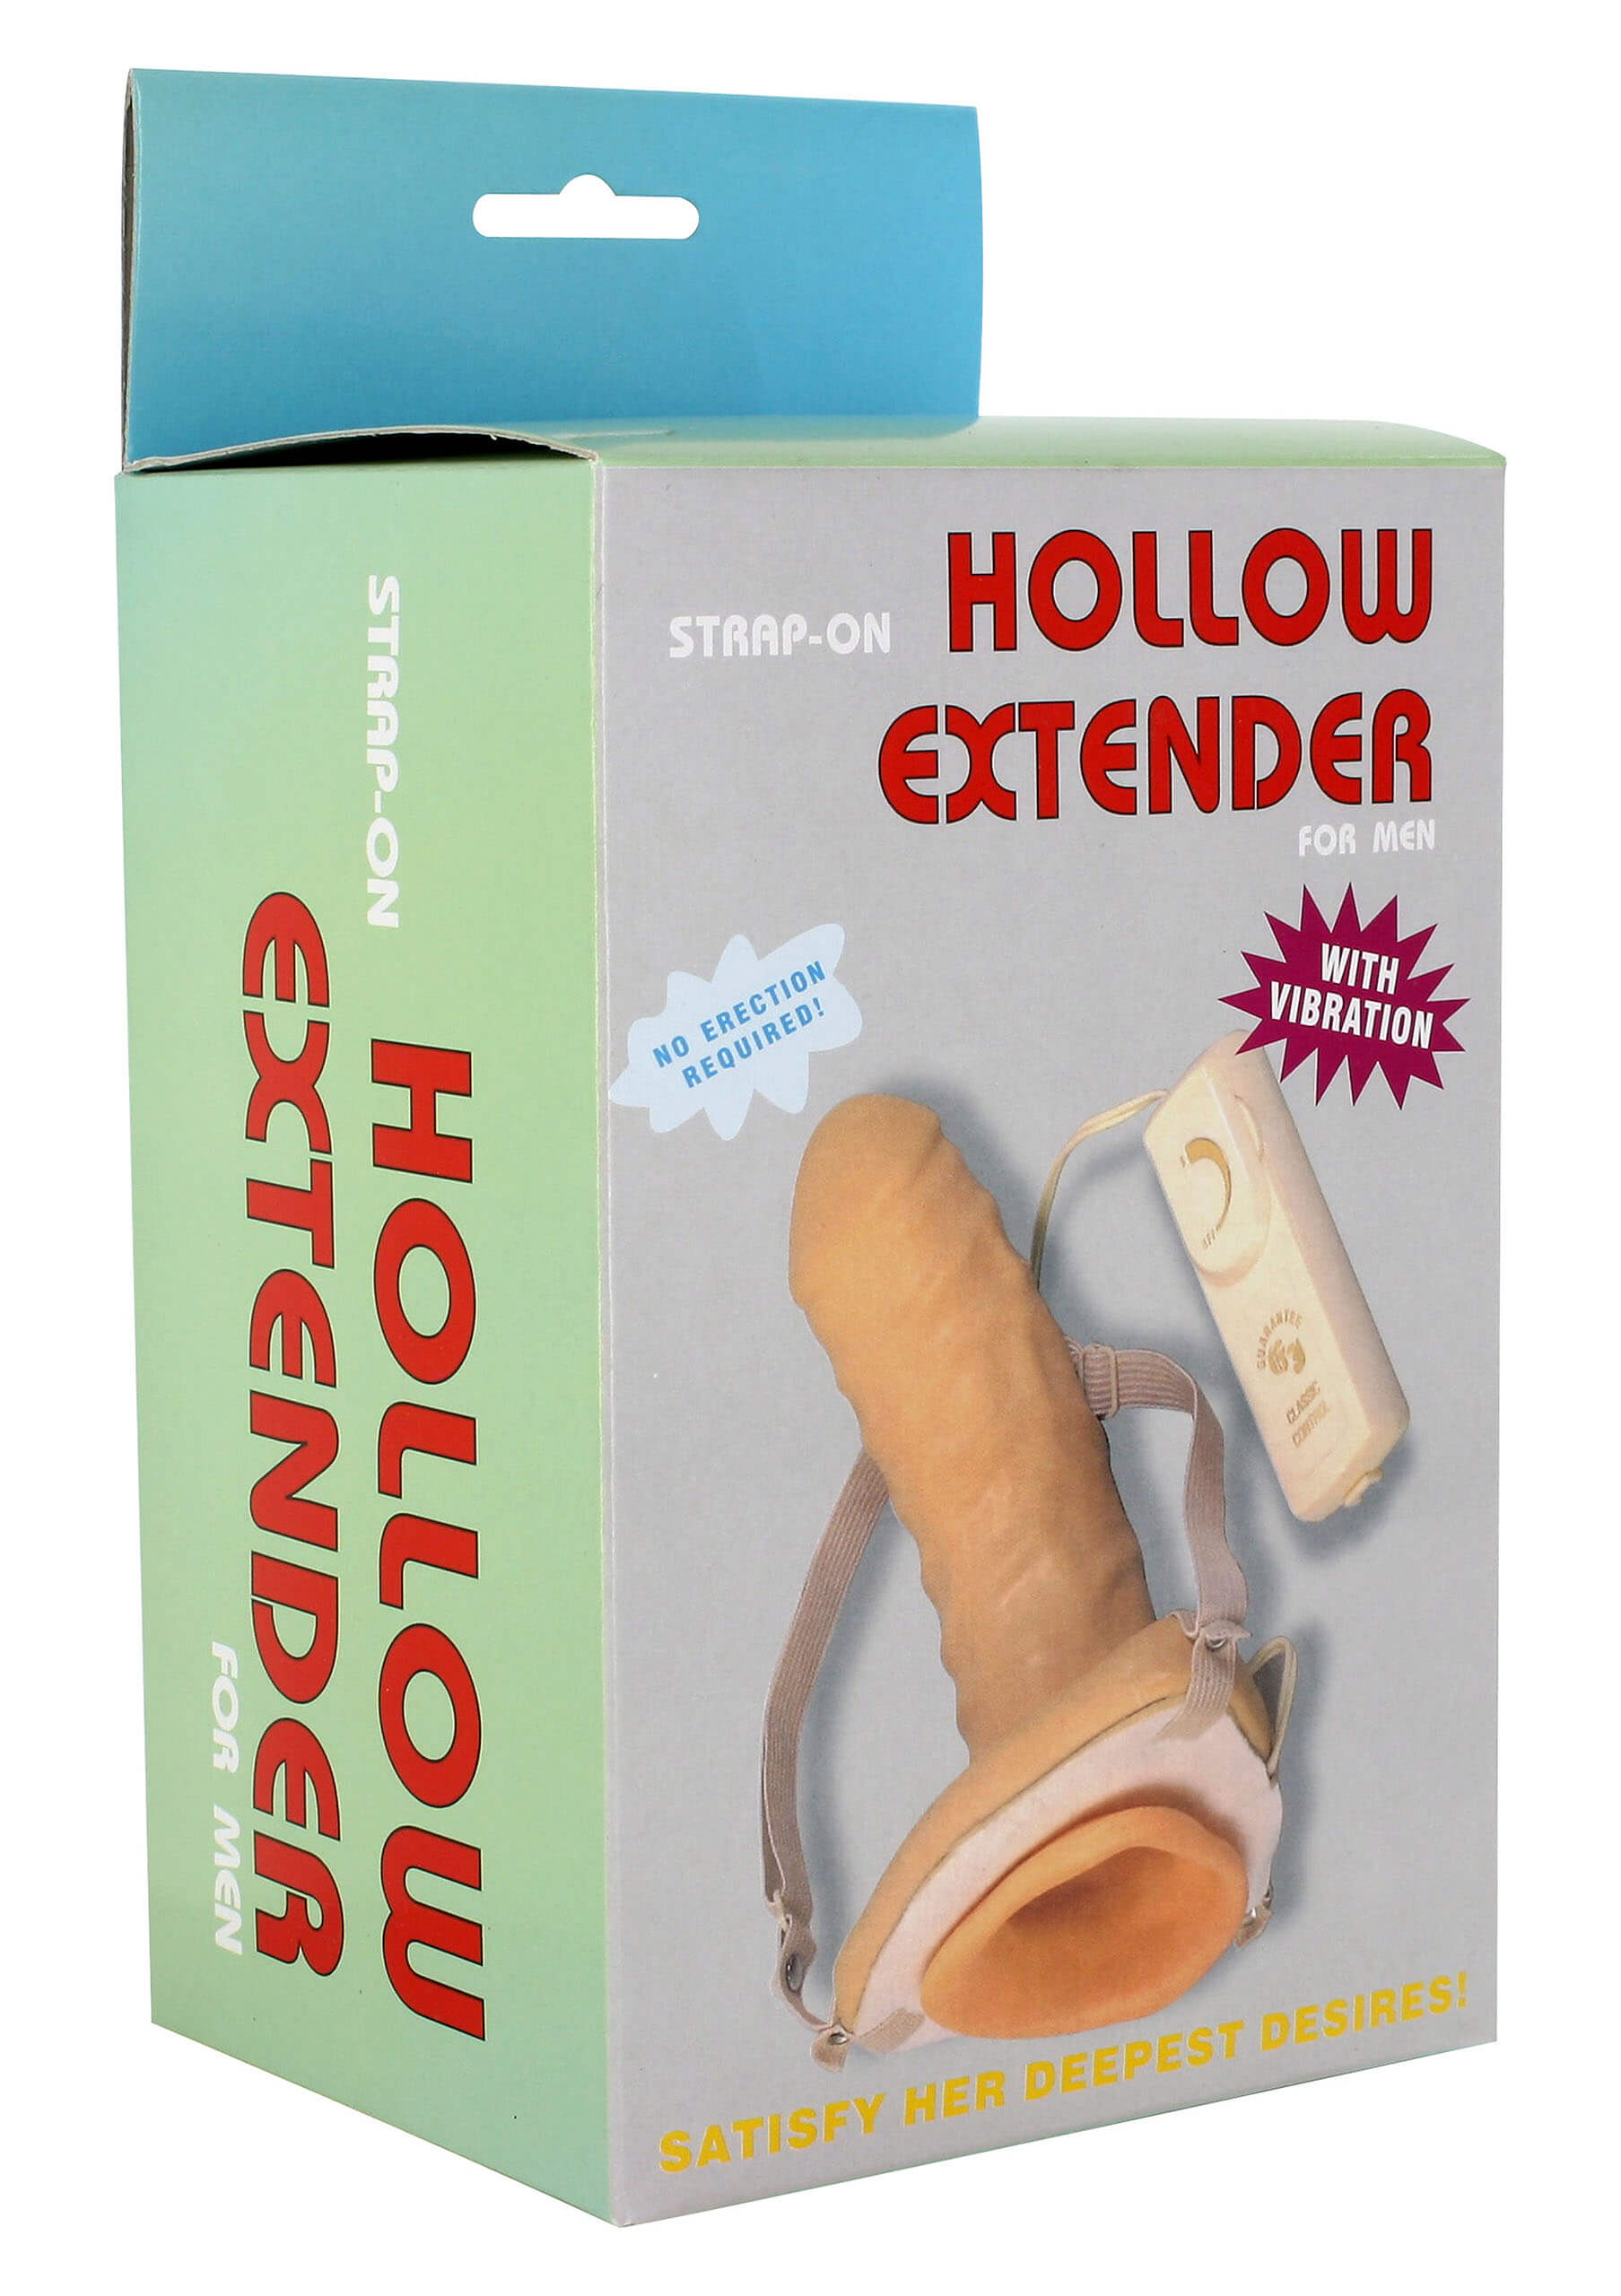 Připínací penis Hollow Extender vibrační